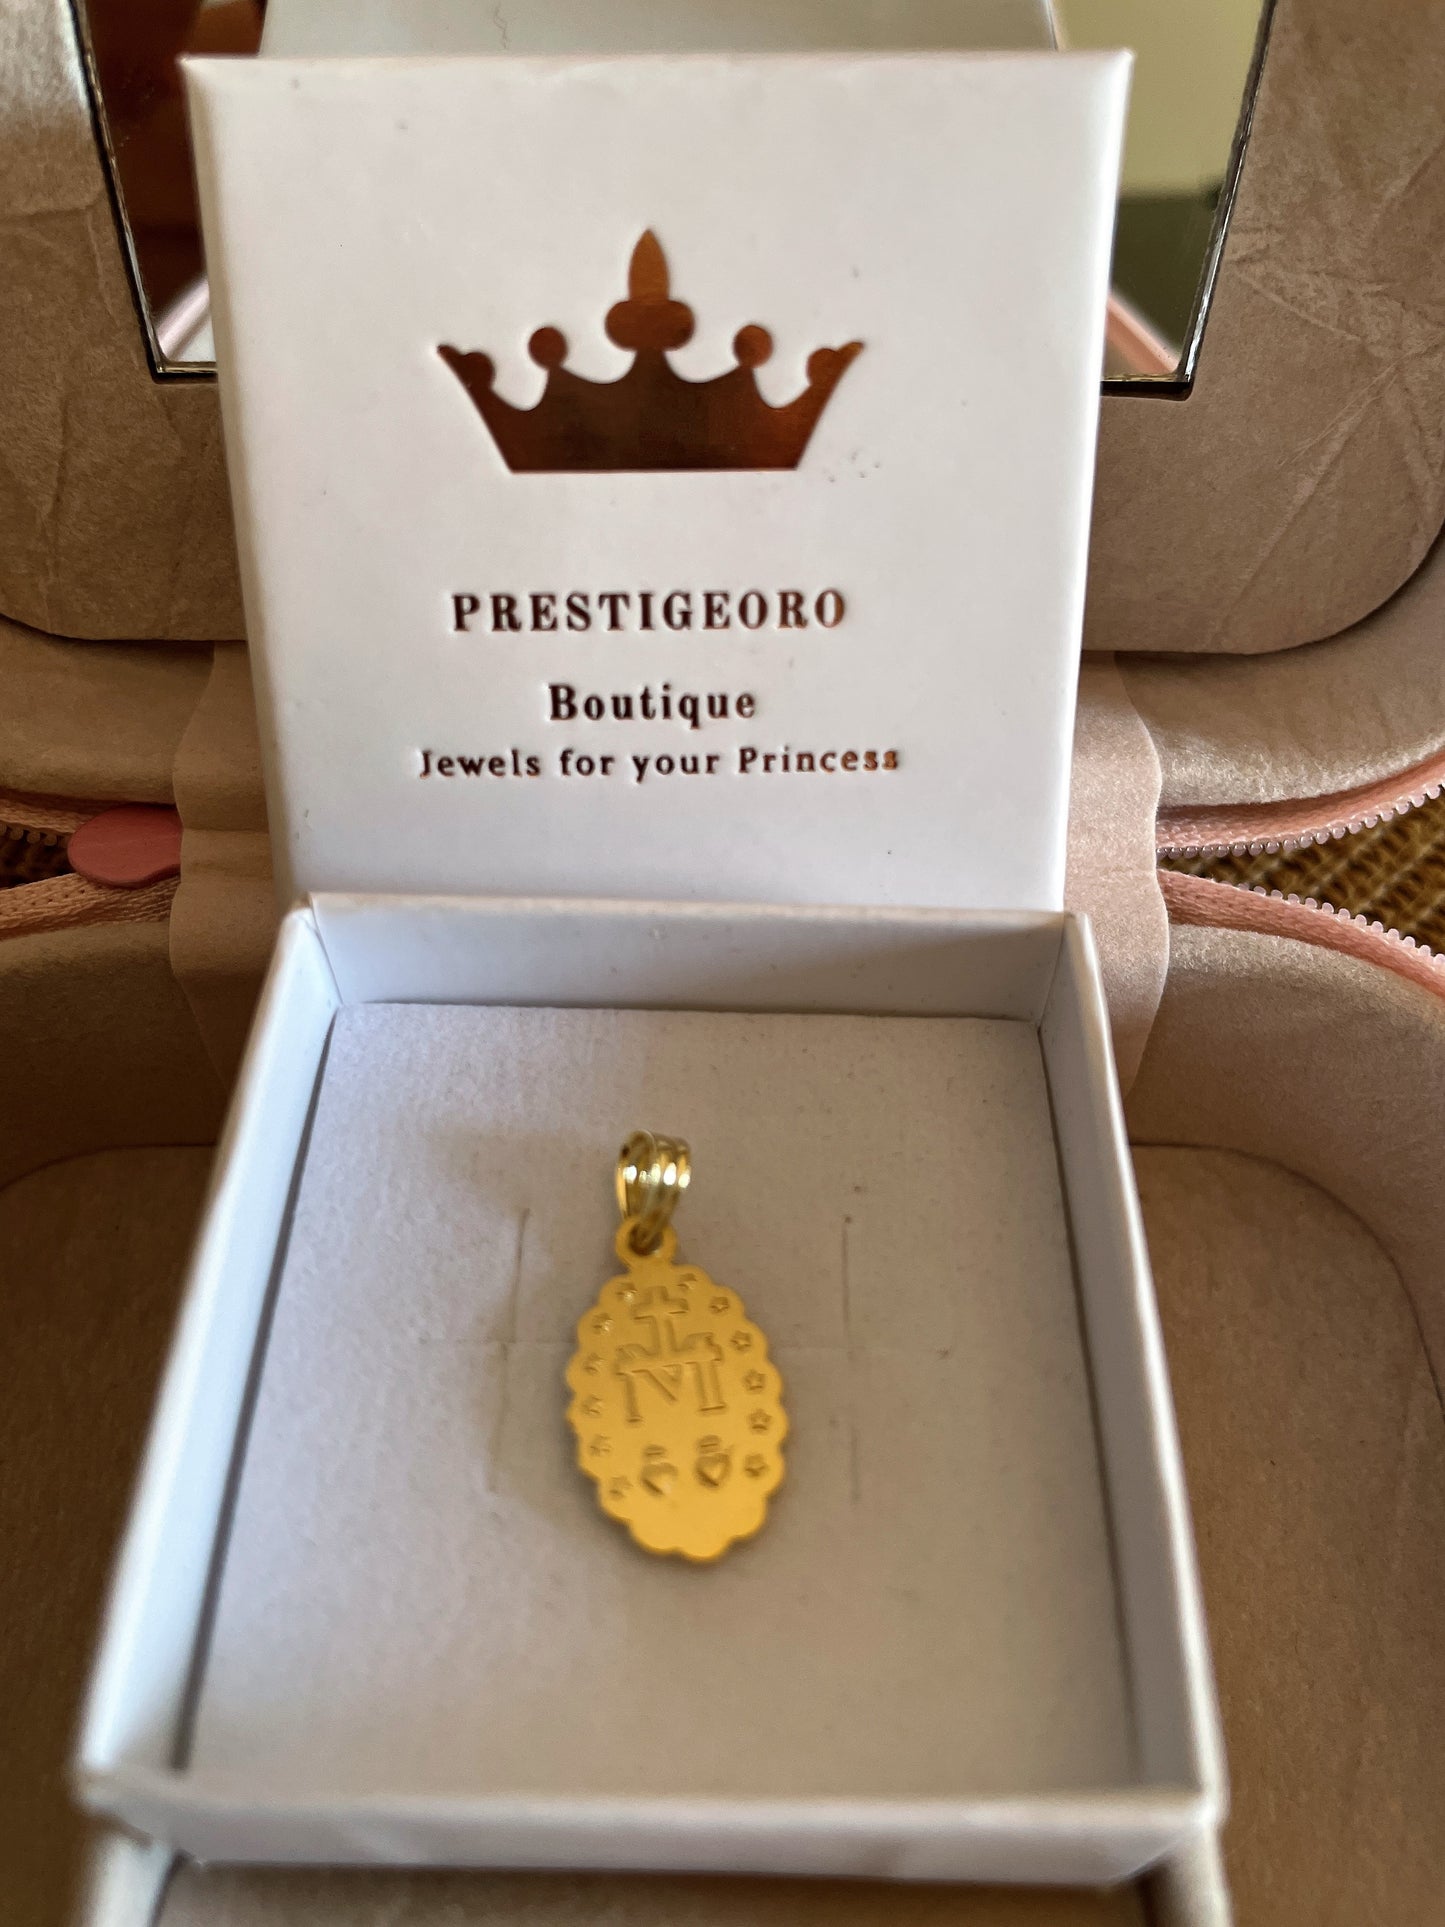 Medalla Virgen Milagrosa peq. (Oro 9K)